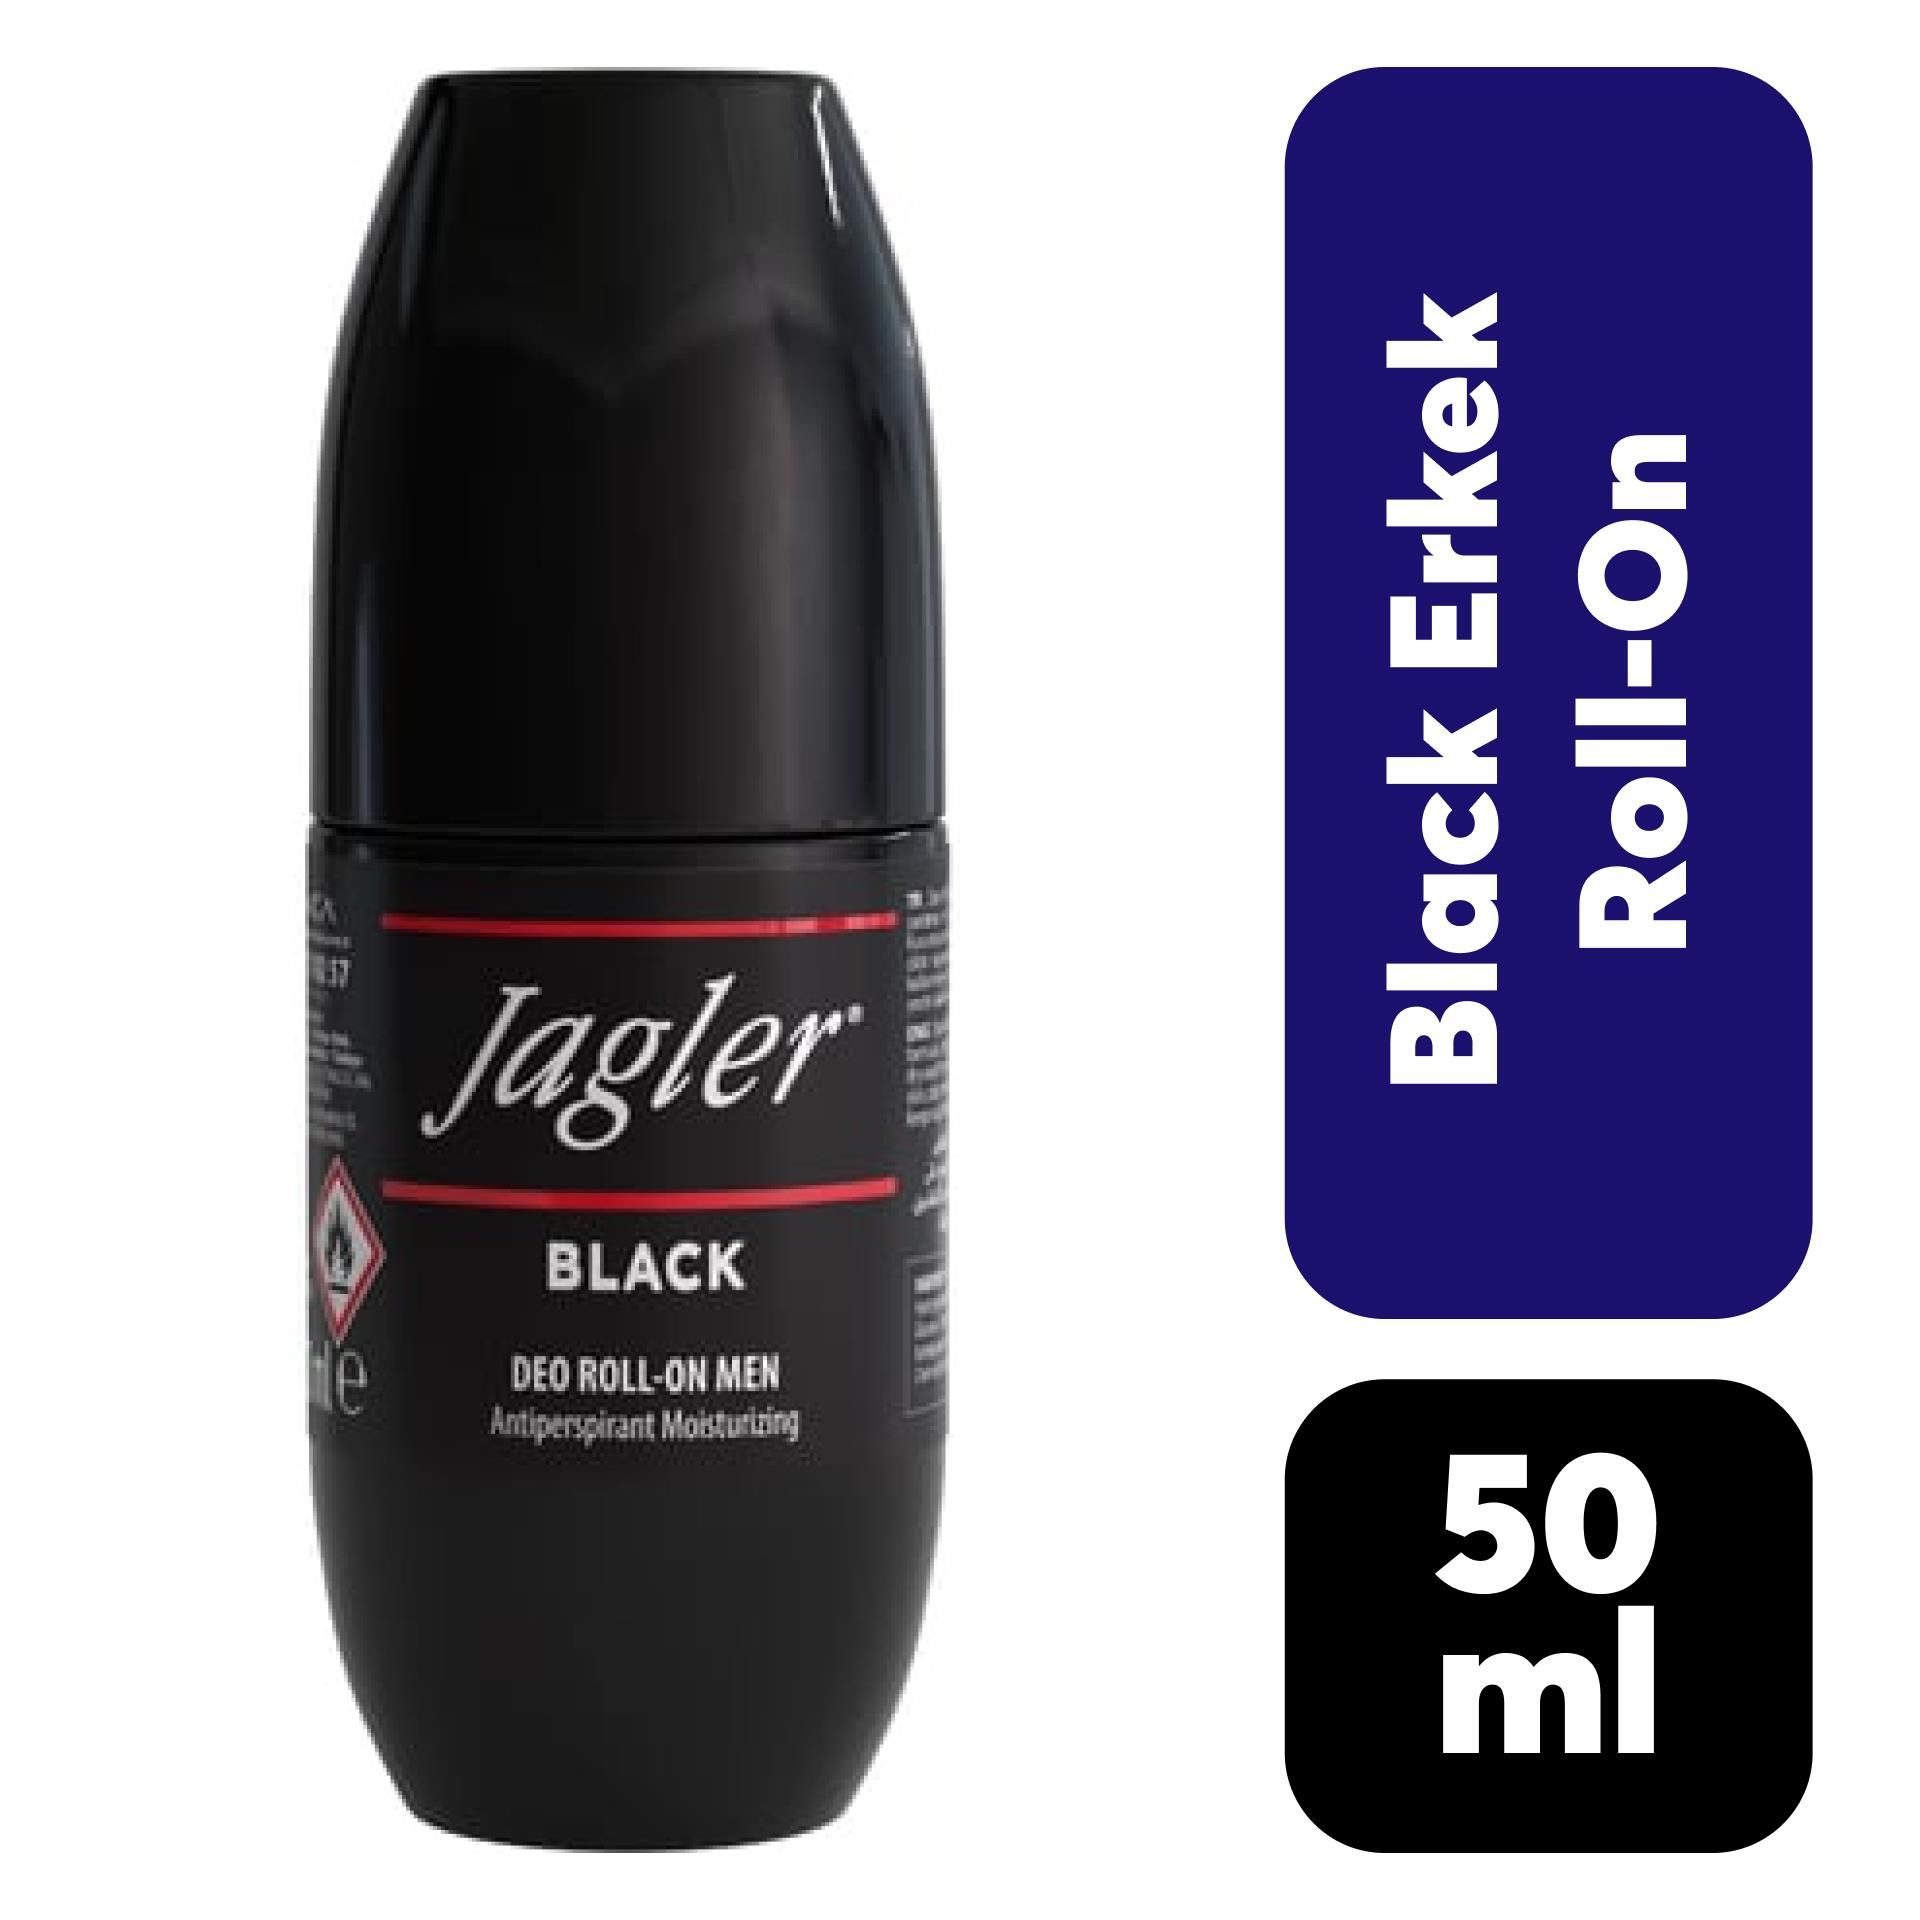 Roll-on Erkek Jagler 50 ml Black